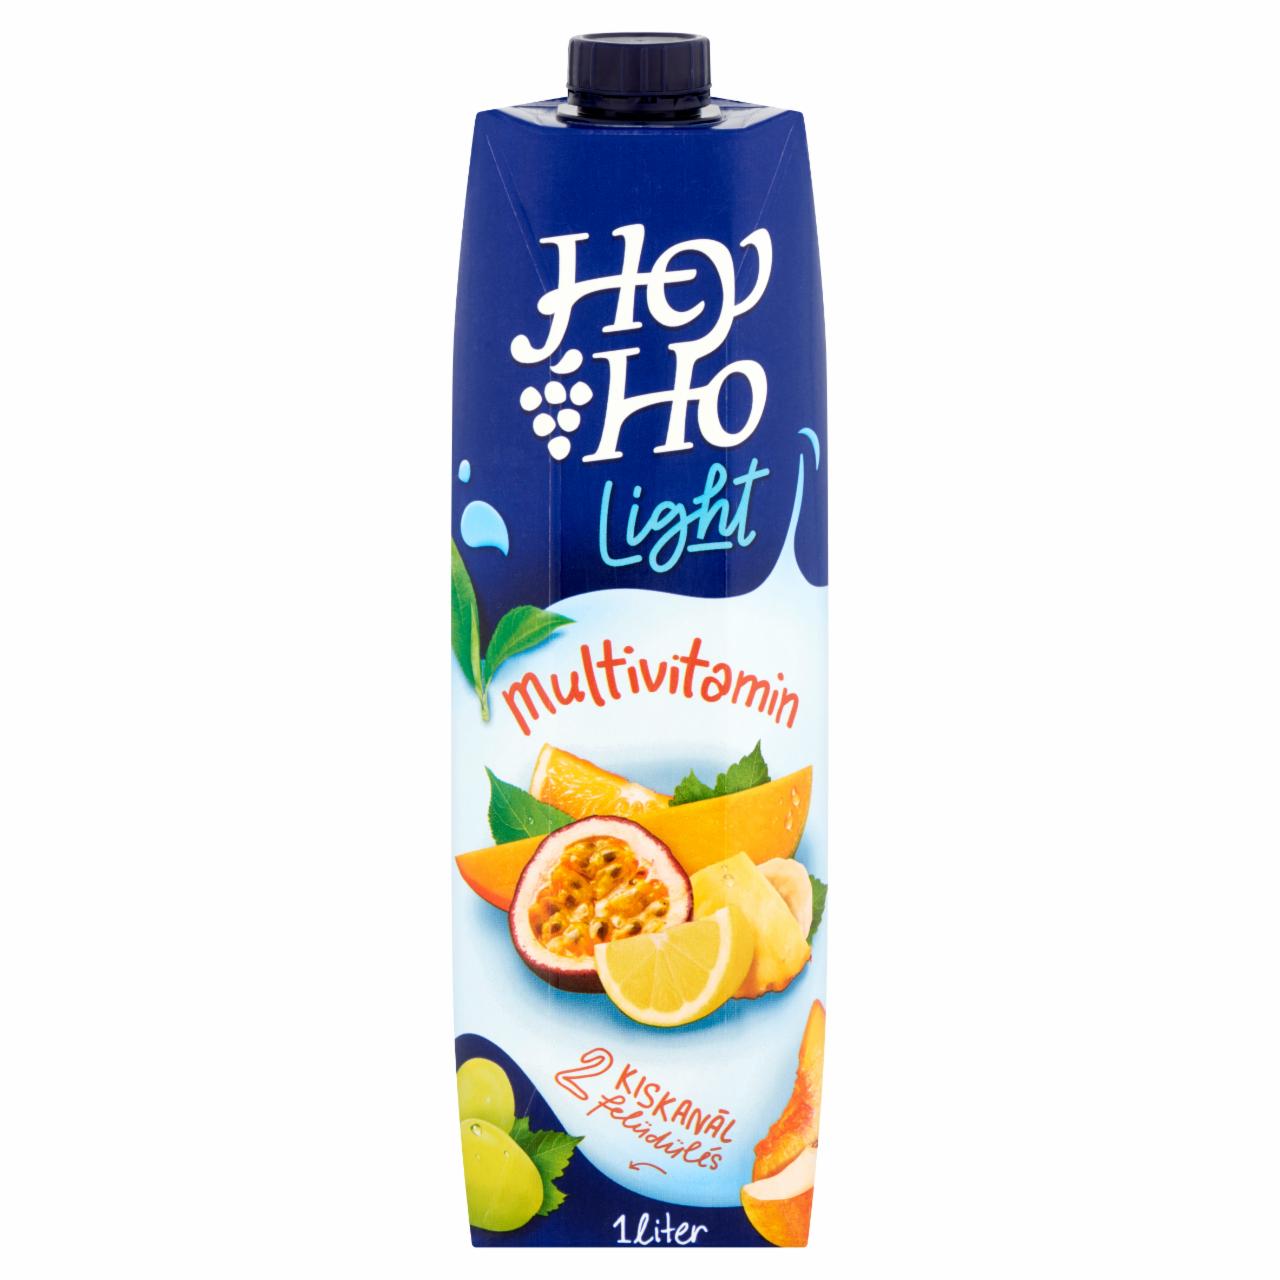 Képek - Hey-Ho Light Multivitamin vegyes gyümölcsital édesítőszerrel és 7 vitaminnal 1 l